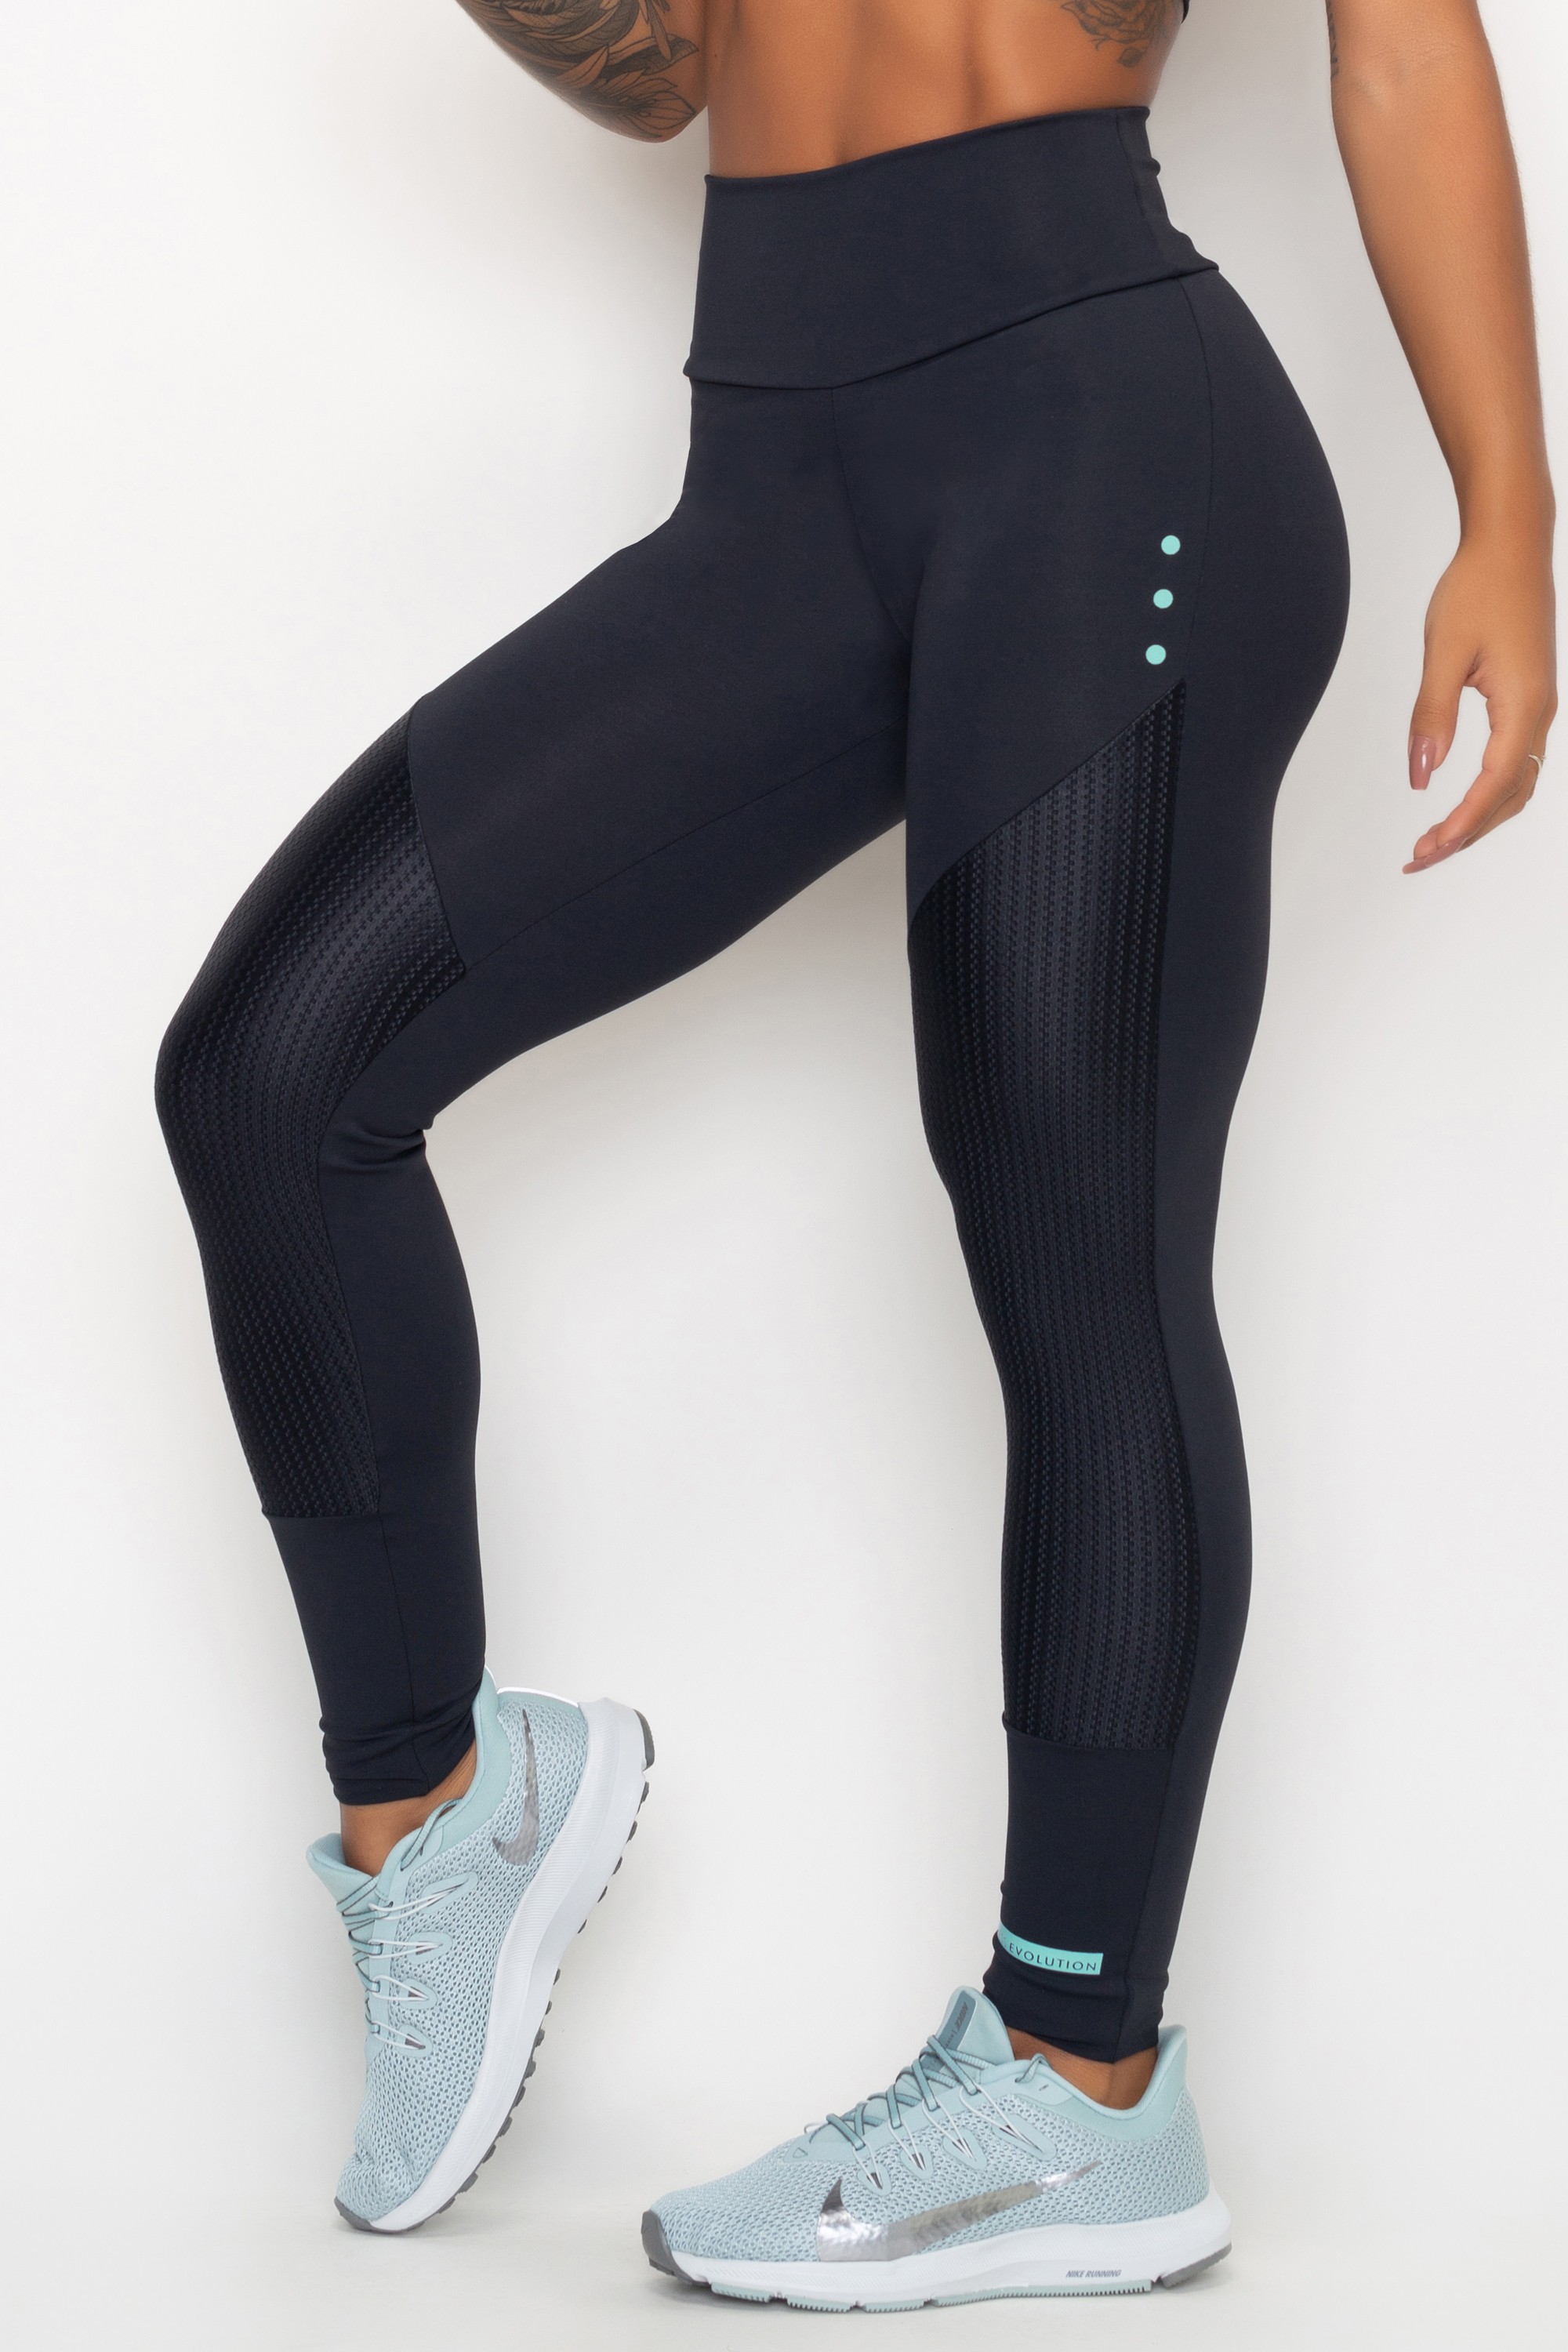 Calça Legging Feminina Esportiva Elite Contra os Raios UV Confortável  119608 - Passarelle Calçados